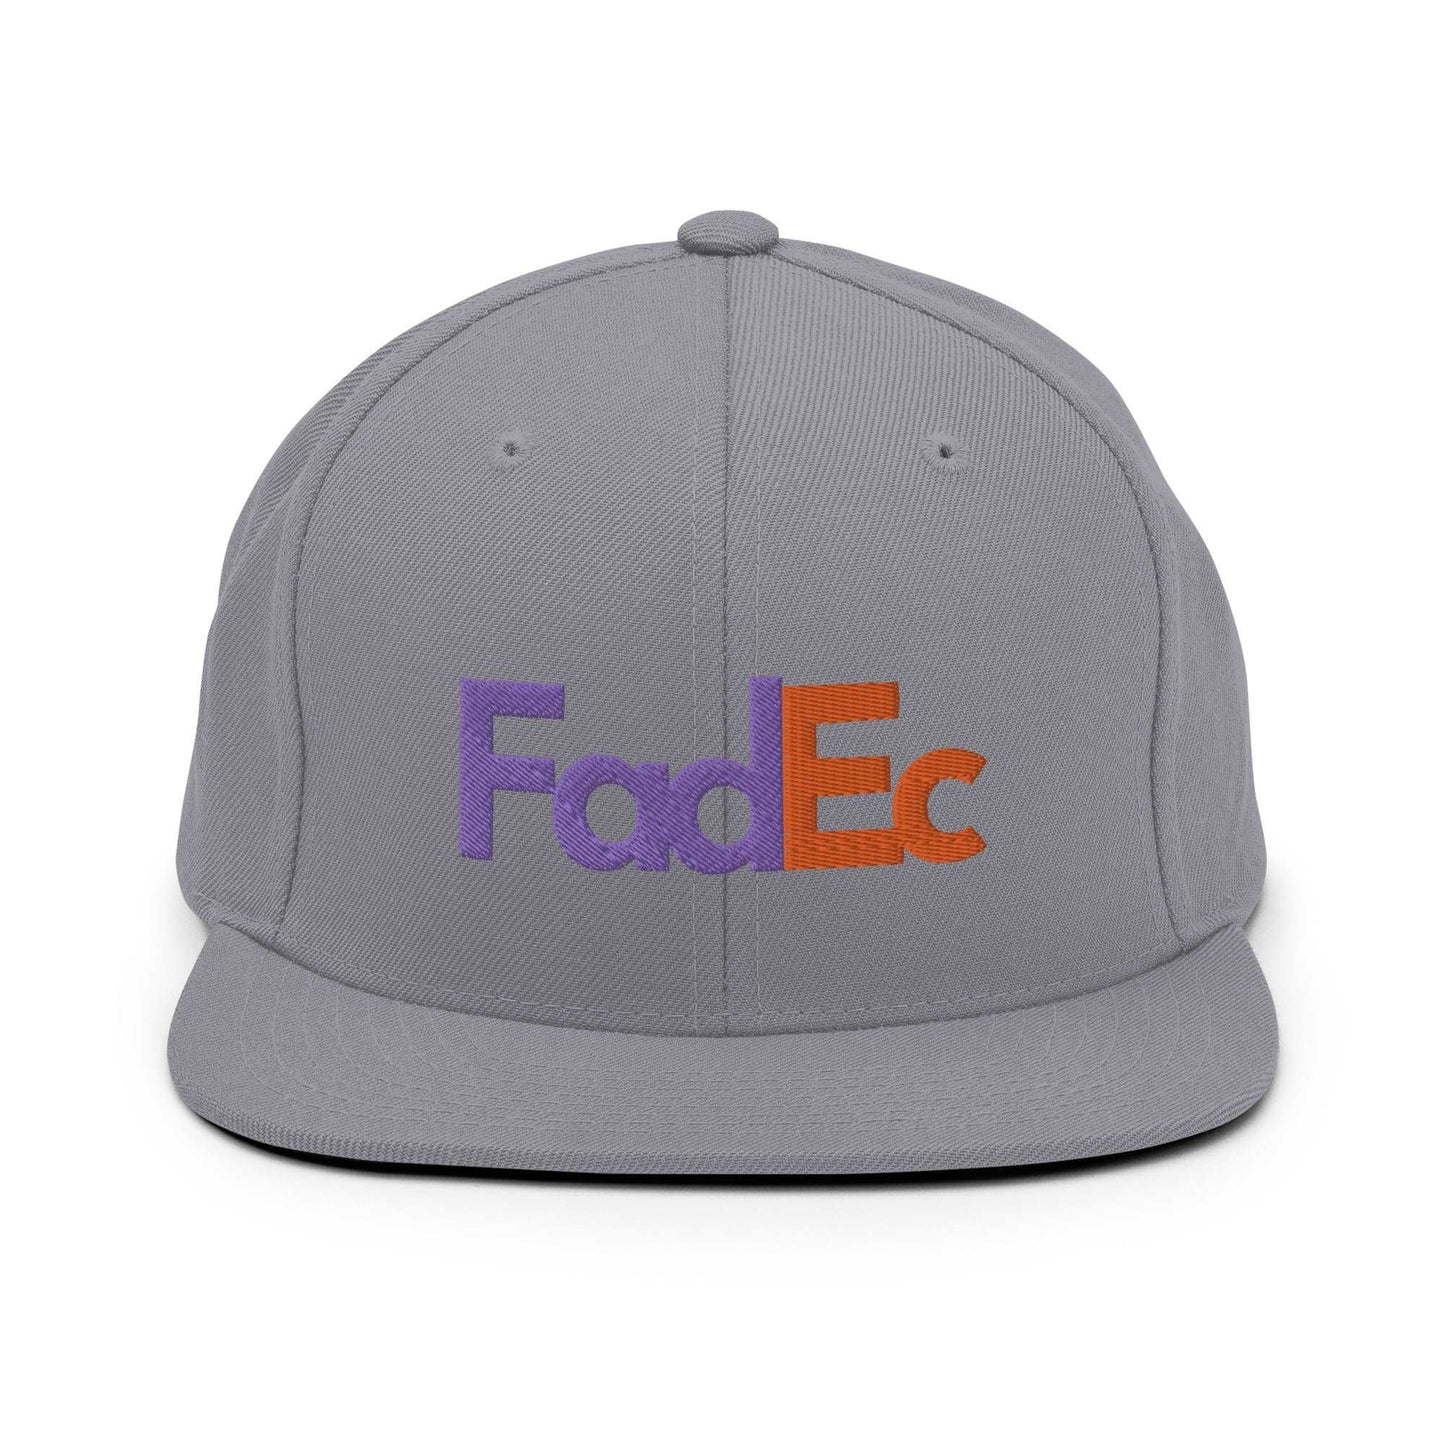 FADEC Flatbrim Hat